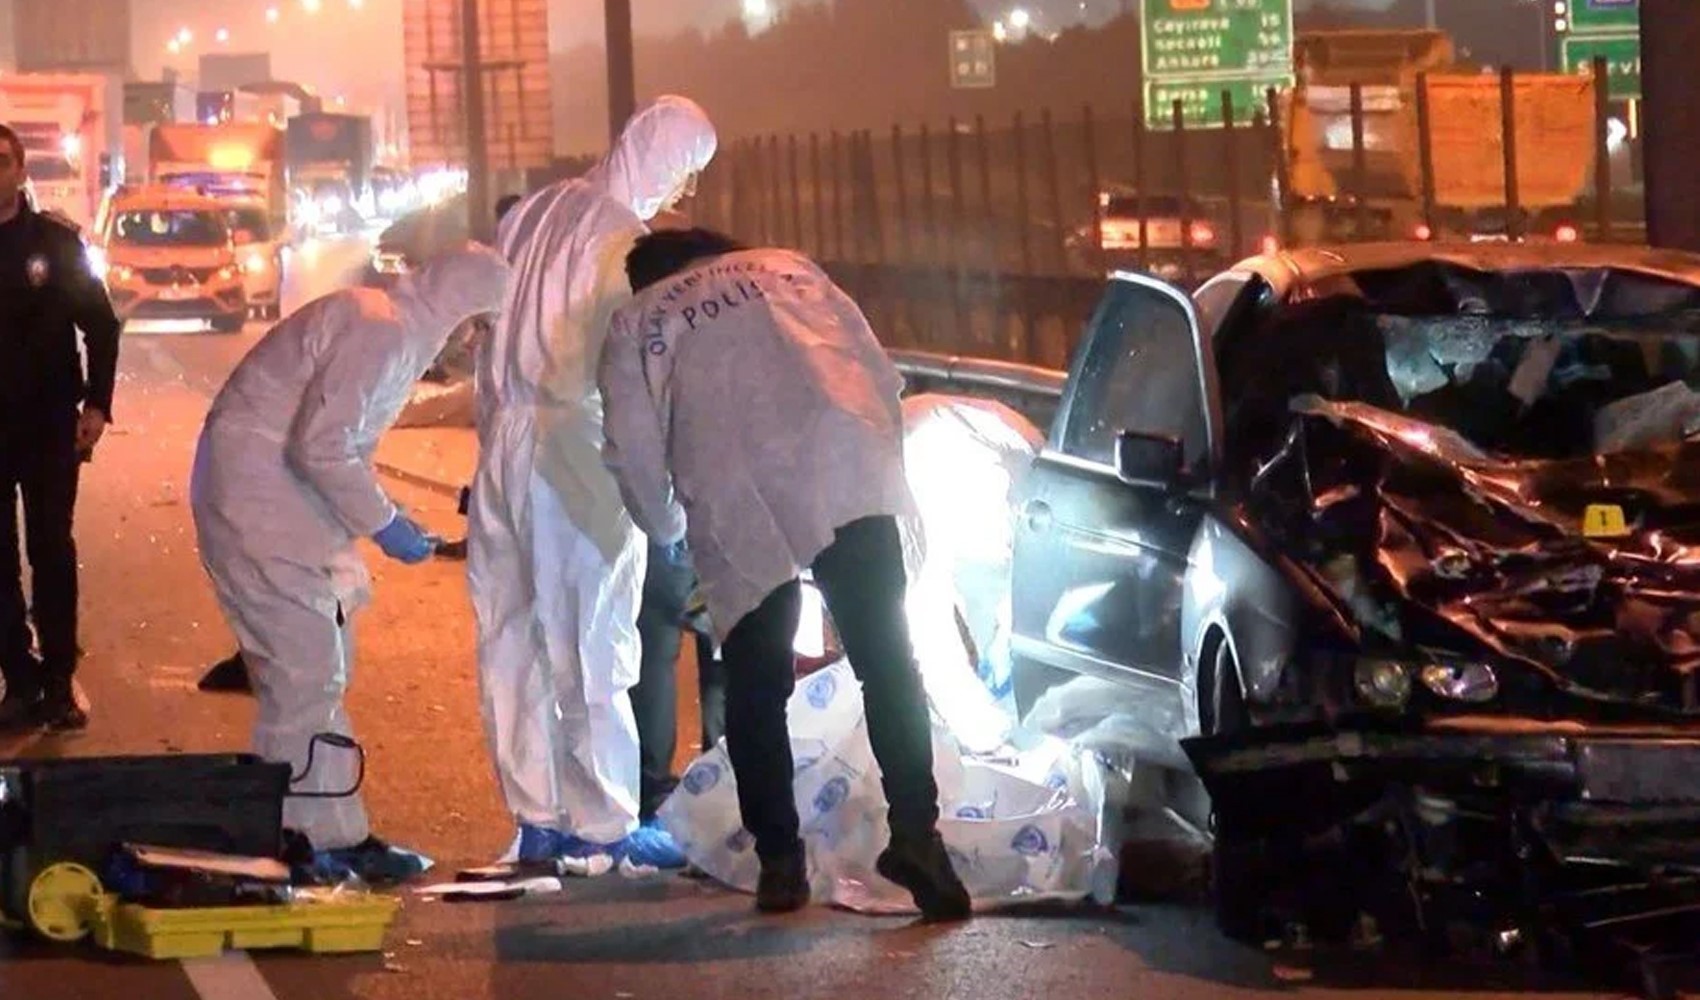 TEM'de feci kaza! Otoyola giren yayalara otomobil çarptı: 5 kişi hayatını kaybetti